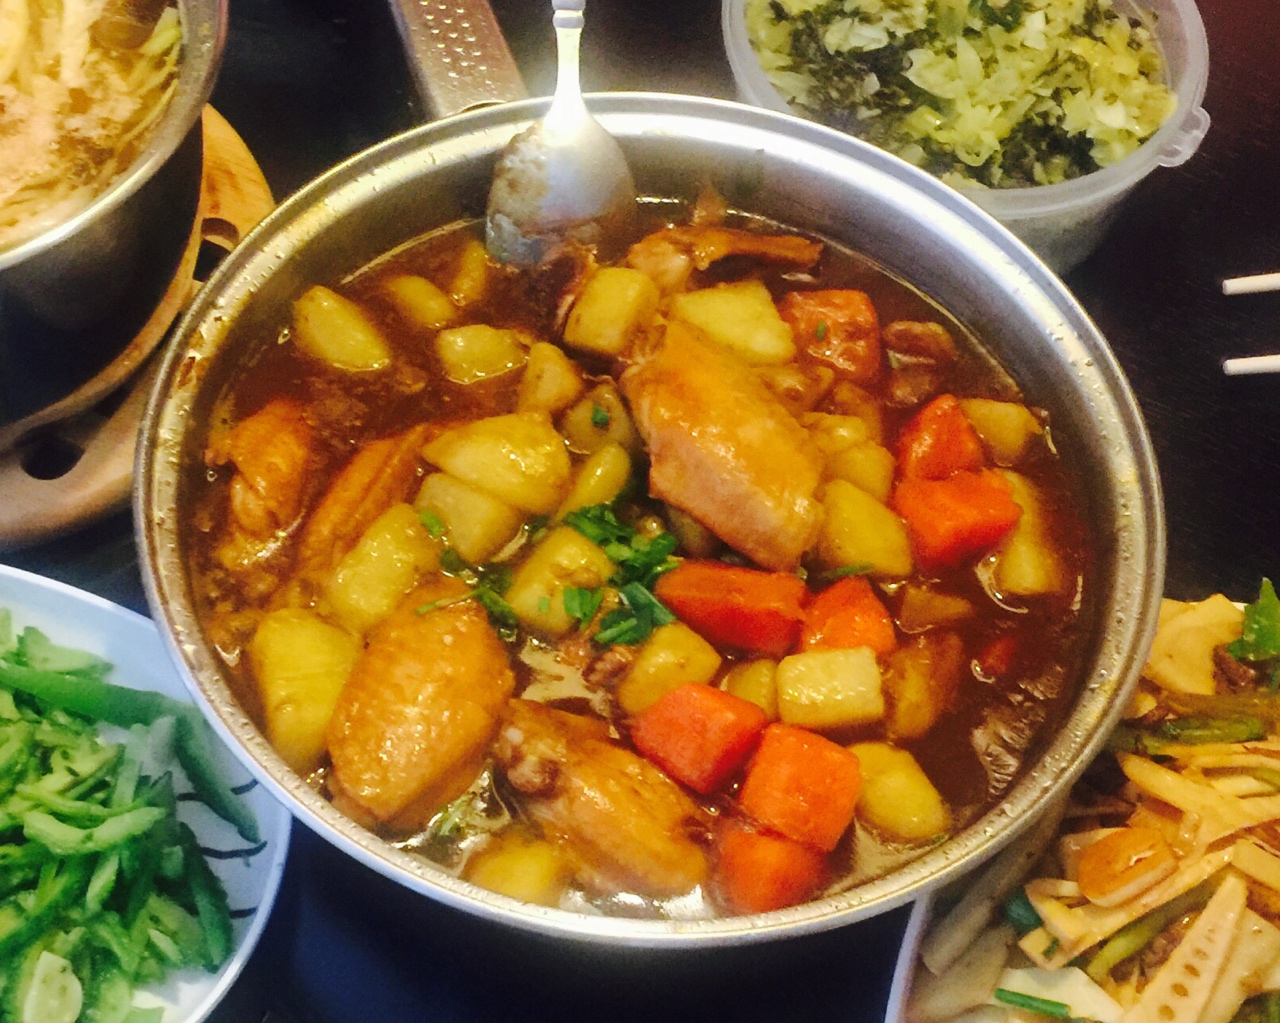 江阿姨菜谱-咖喱鸡翅炖土豆胡萝卜的做法